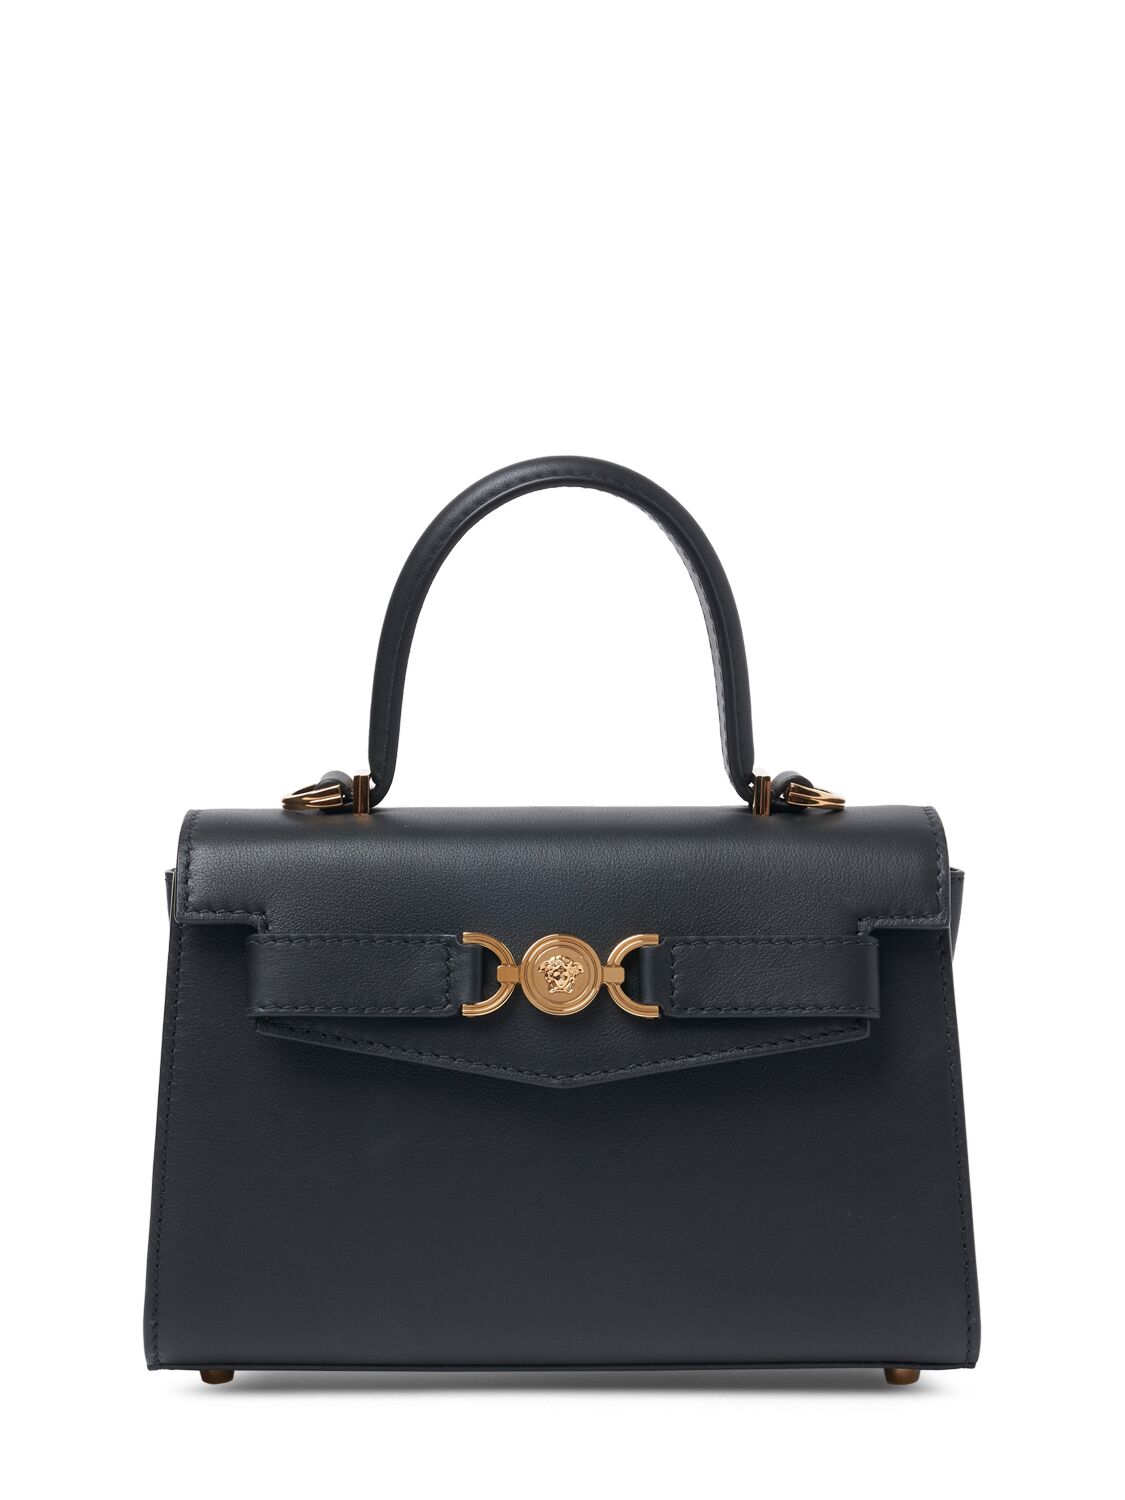 Versace Medium Leather Top Handle Bag In Black